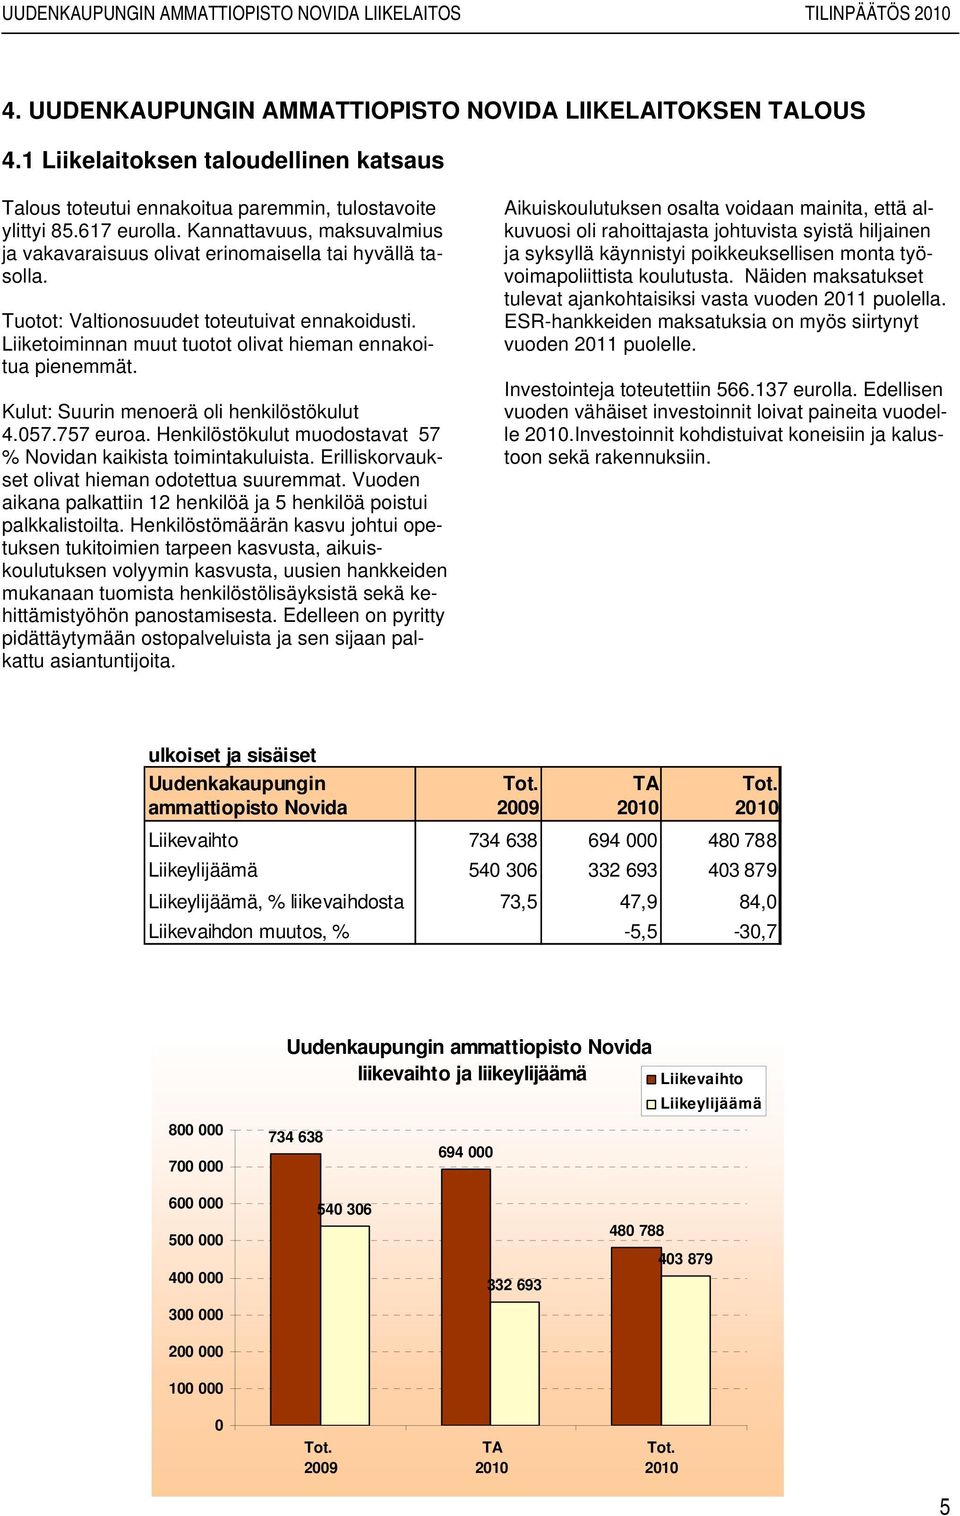 Kulut: Suurin menoerä oli henkilöstökulut 4.057.757 euroa. Henkilöstökulut muodostavat 57 % Novidan kaikista toimintakuluista. Erilliskorvaukset olivat hieman odotettua suuremmat.